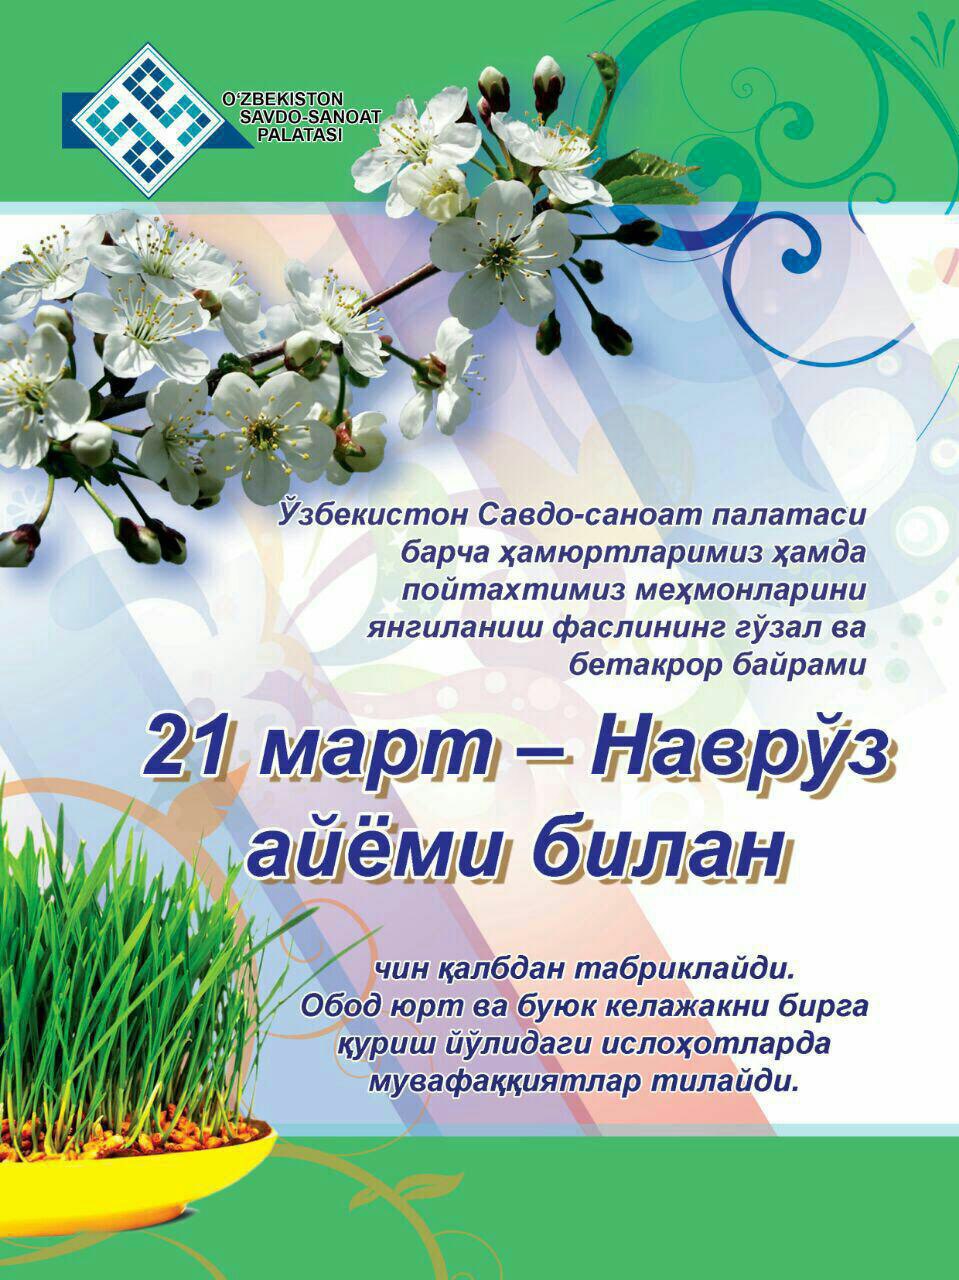 Поздравление с наврузом на узбекском языке. Навруз. Навруз поздравление. Поздравления нарврузы. Навруз открытки.